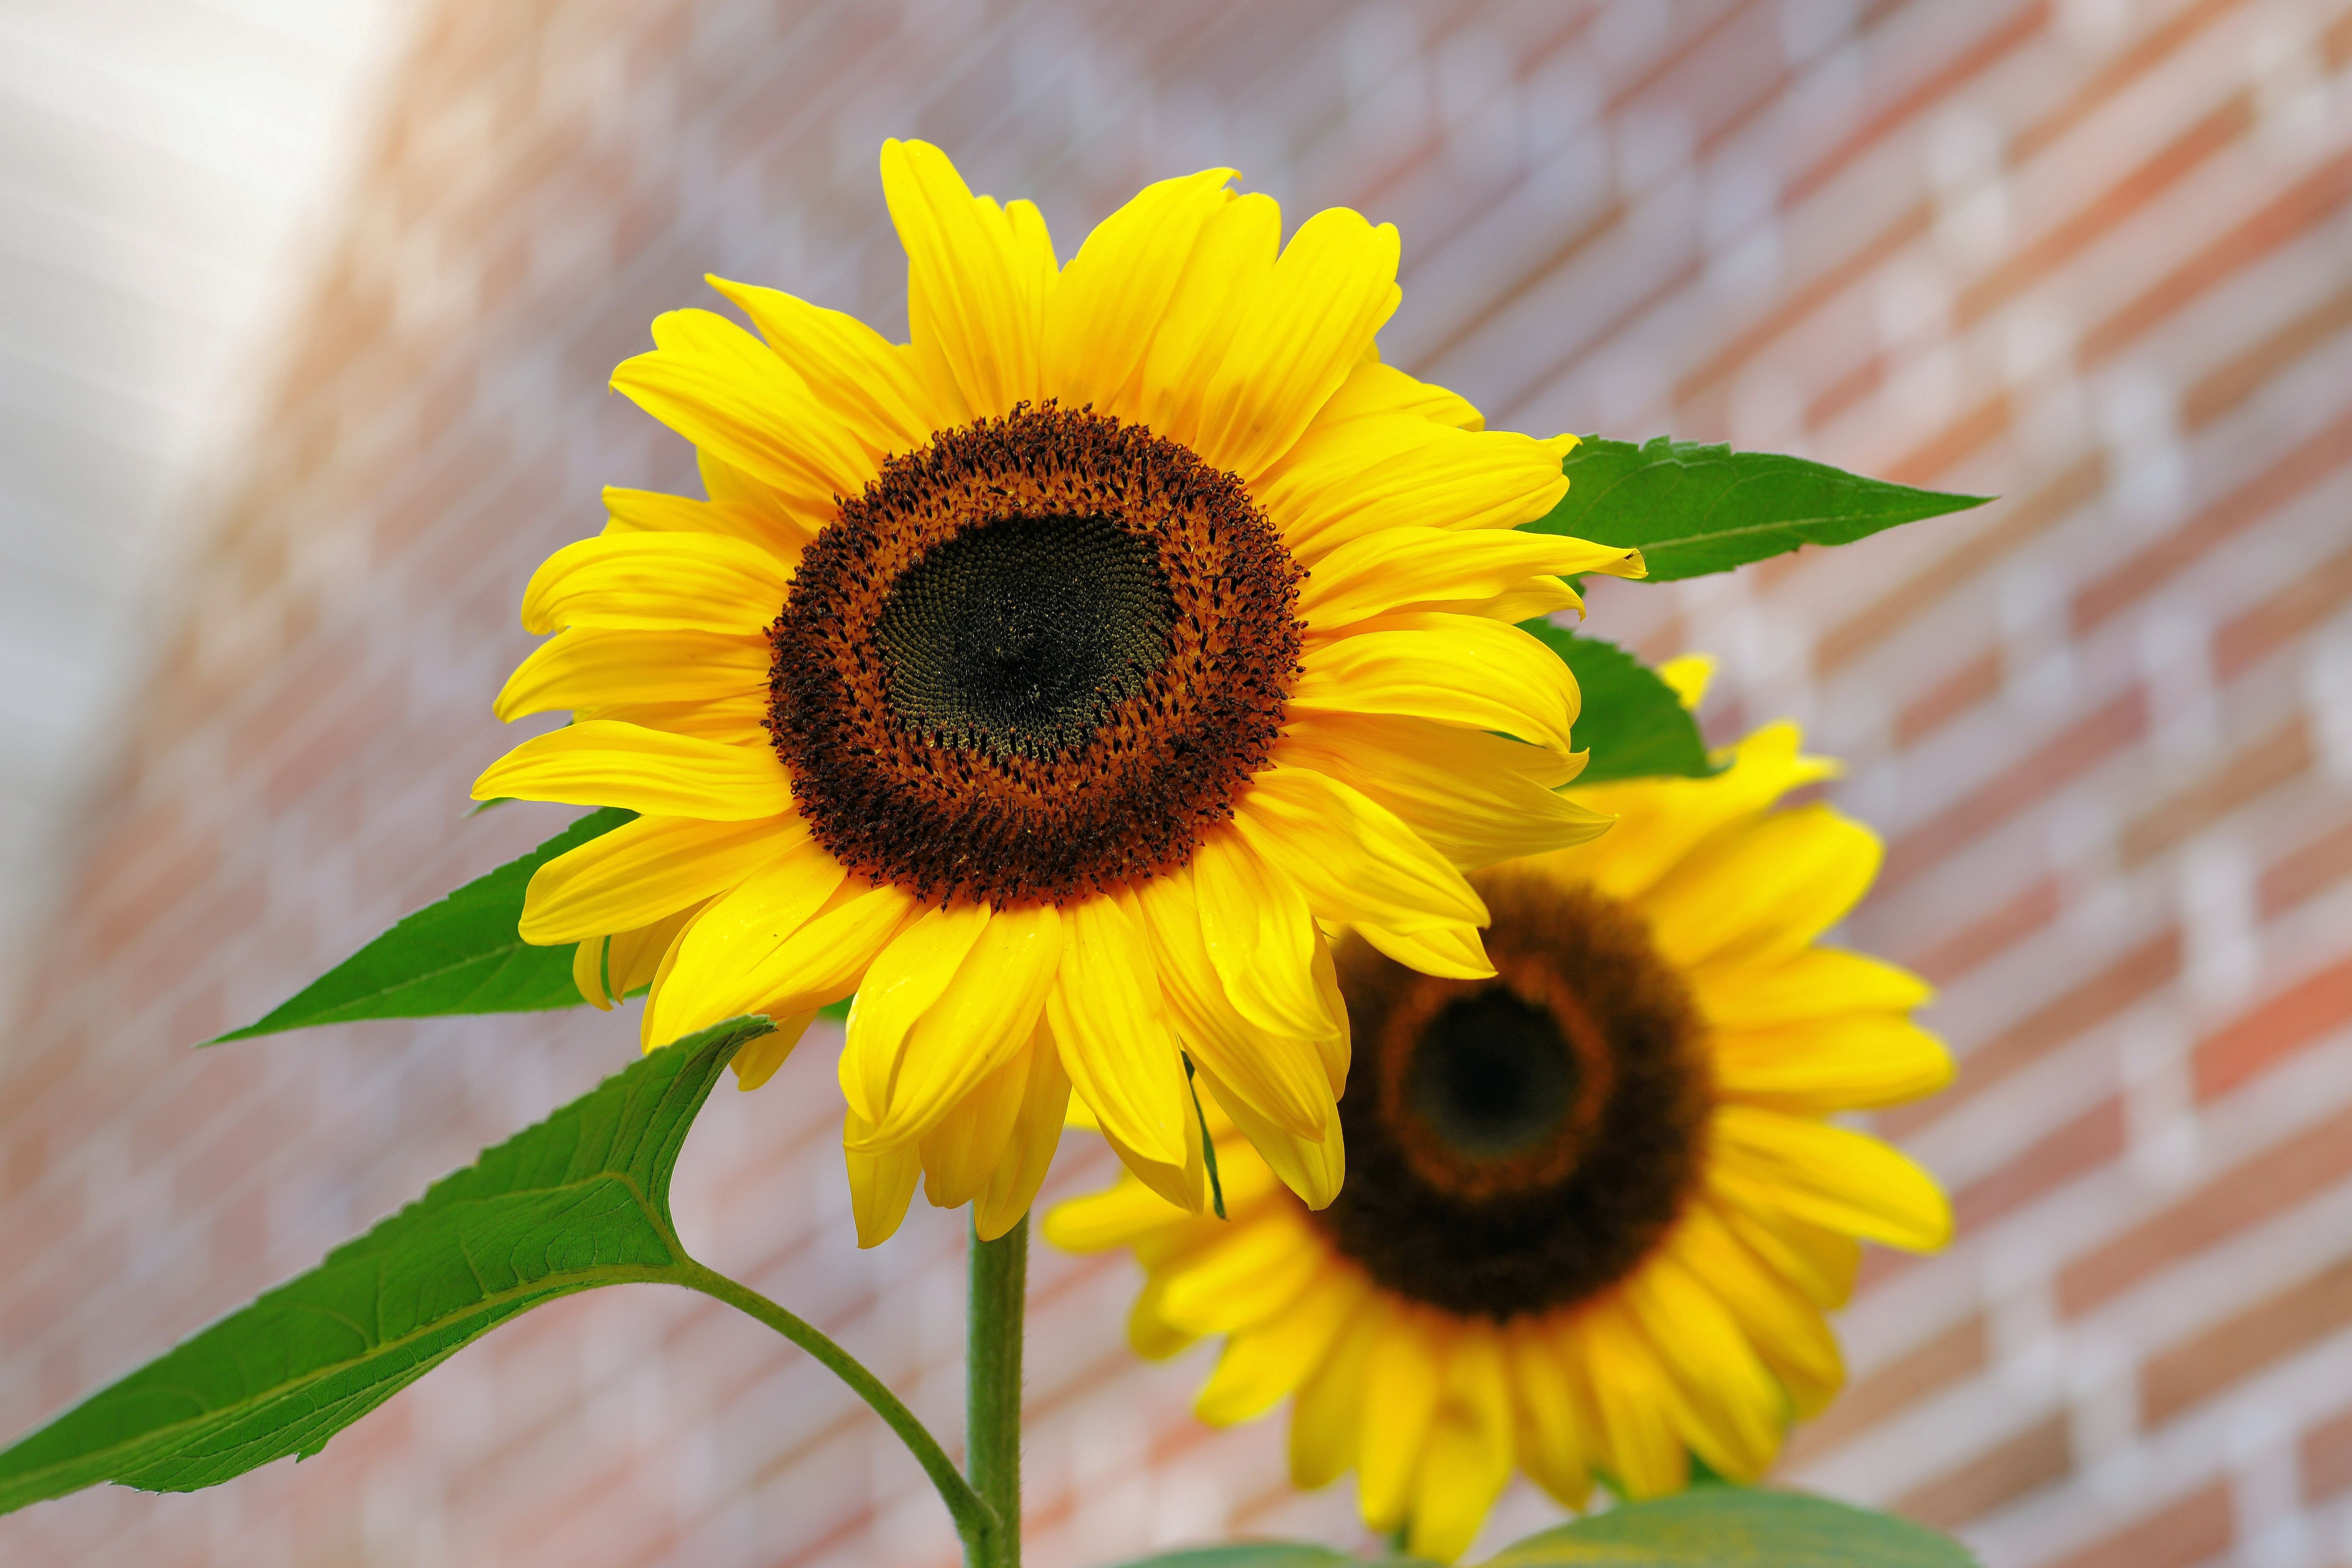 Hình ảnh hoa hướng dương miễn phí sẽ giúp cho bạn tiết kiệm chi phí và đồng thời sở hữu được những bức ảnh đẹp nhất về loài hoa này. Tận hưởng ngay sự tuyệt vời của những bức ảnh hoa hướng dương miễn phí!